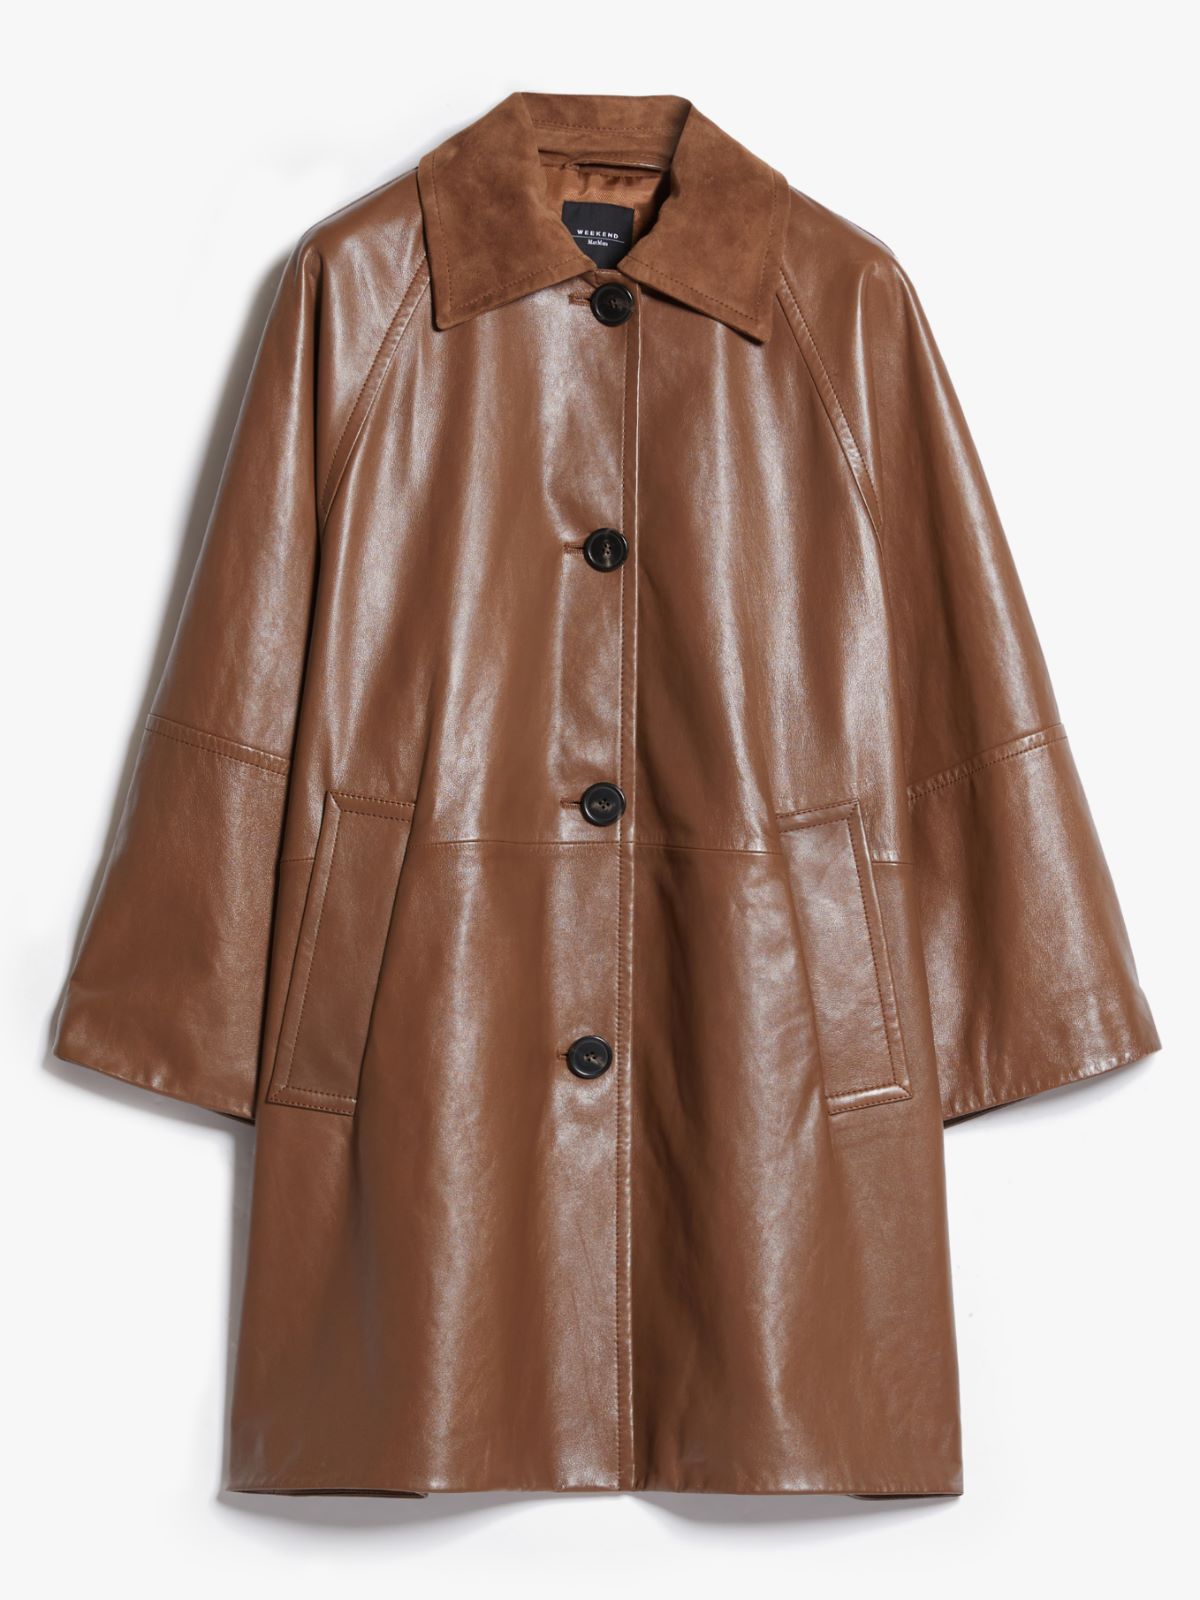 Leather overcoat - TOBACCO - Weekend Max Mara - 6